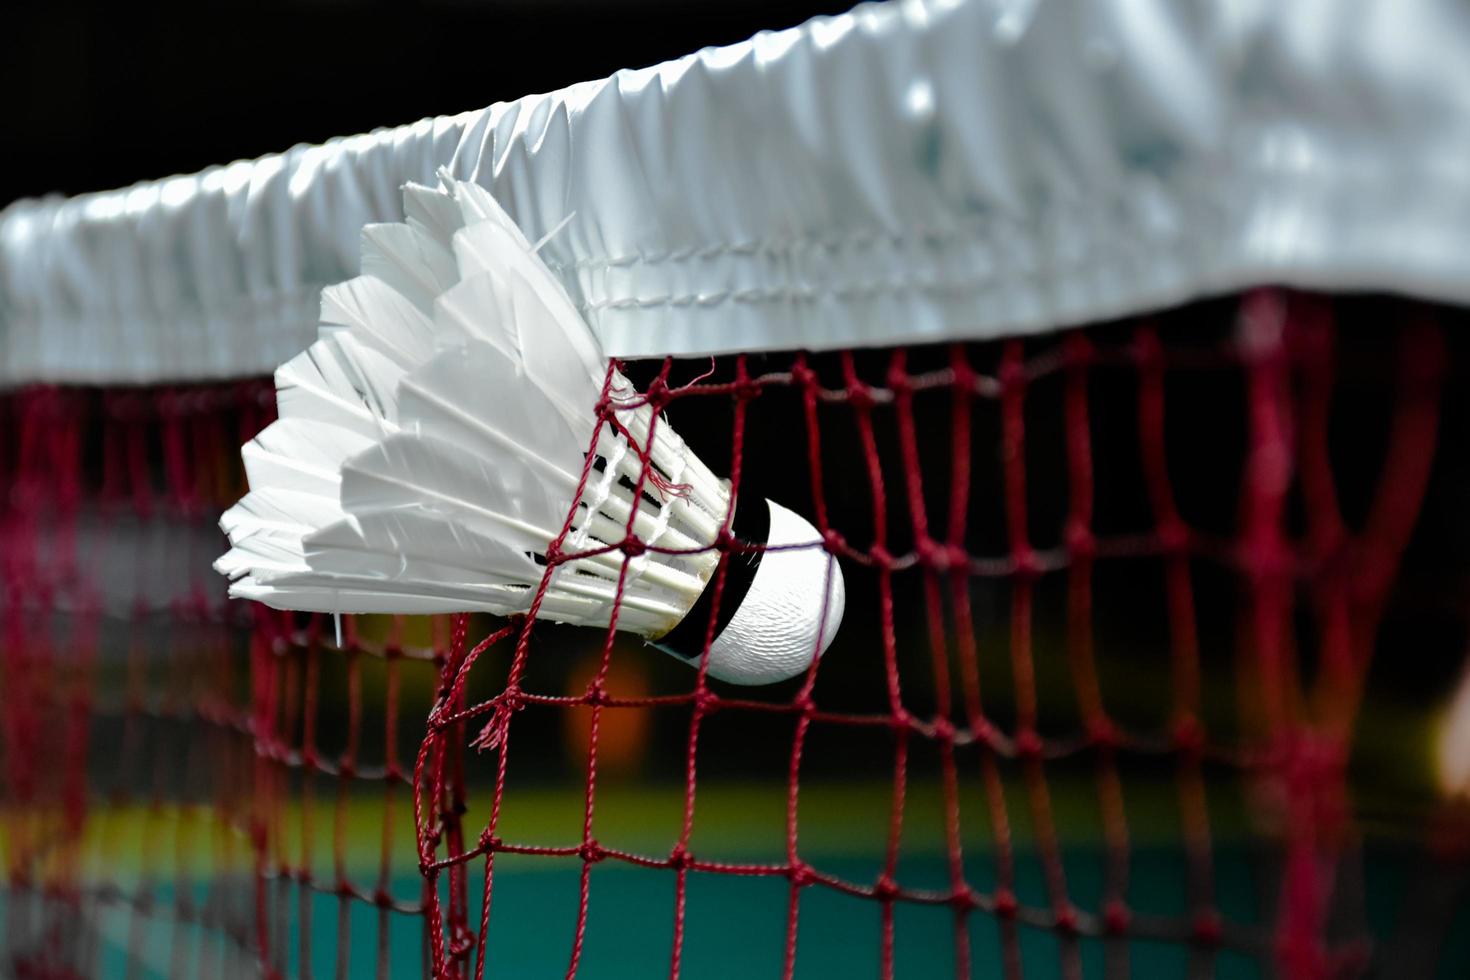 badminton utomhus utrustning vit och gul plast badmintonbollar och badminton racketar, på gräsmatta, mjuk och selektiv fokus på badmintonbollar utomhus- badminton spelar begrepp foto